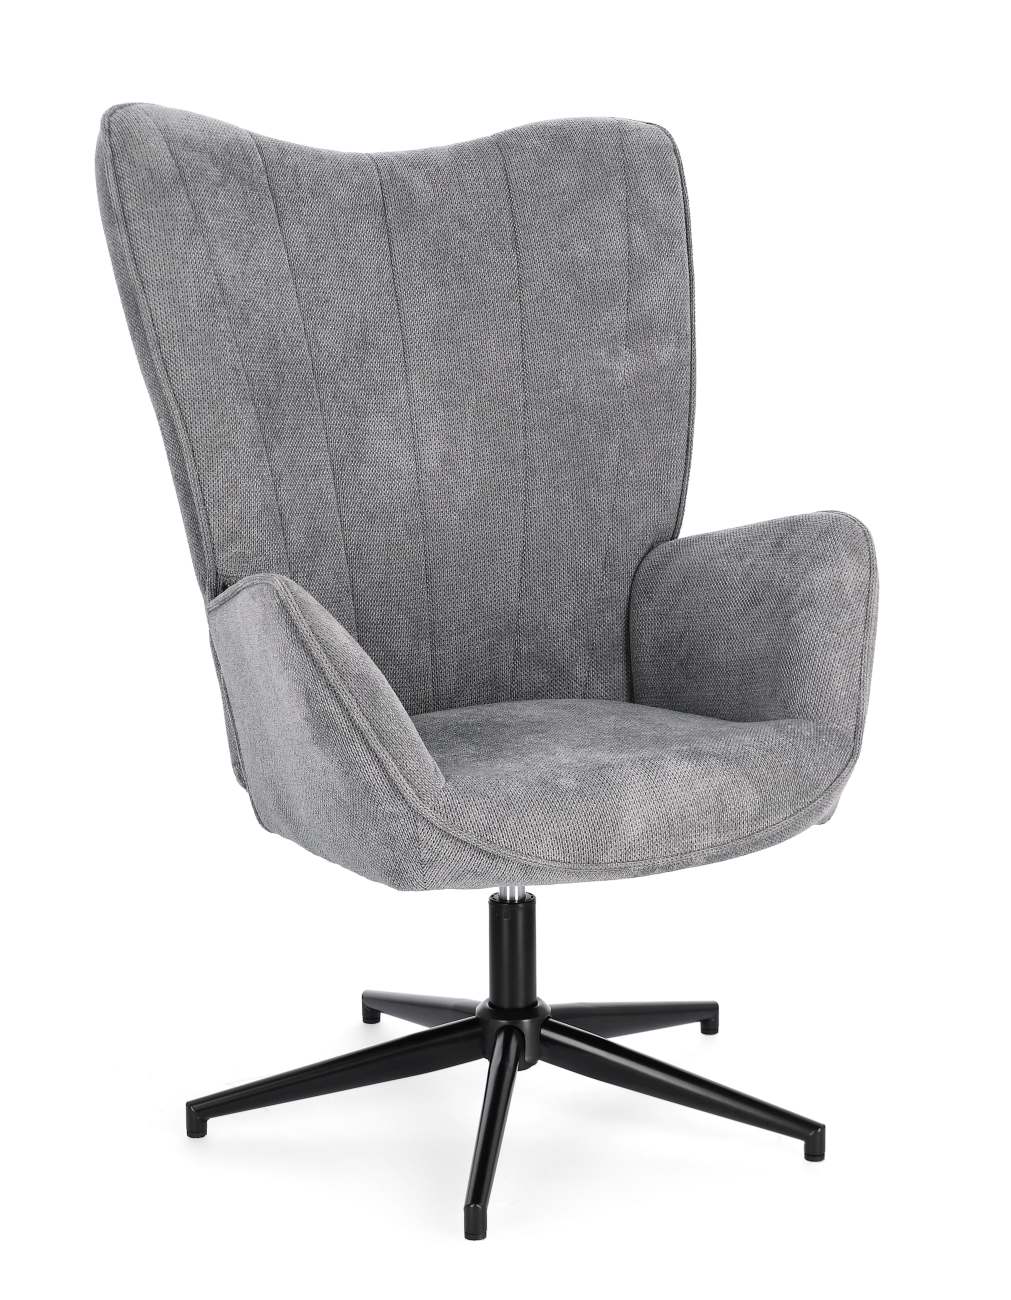 Der Drehsessel Inas überzeugt mit seinem modernen Stil. Gefertigt wurde er aus Stoff, welcher einen grauen Farbton besitzt. Das Gestell ist aus Metall und hat eine schwarze Farbe. Der Sessel besitzt eine Sitzhöhe von 50 cm.